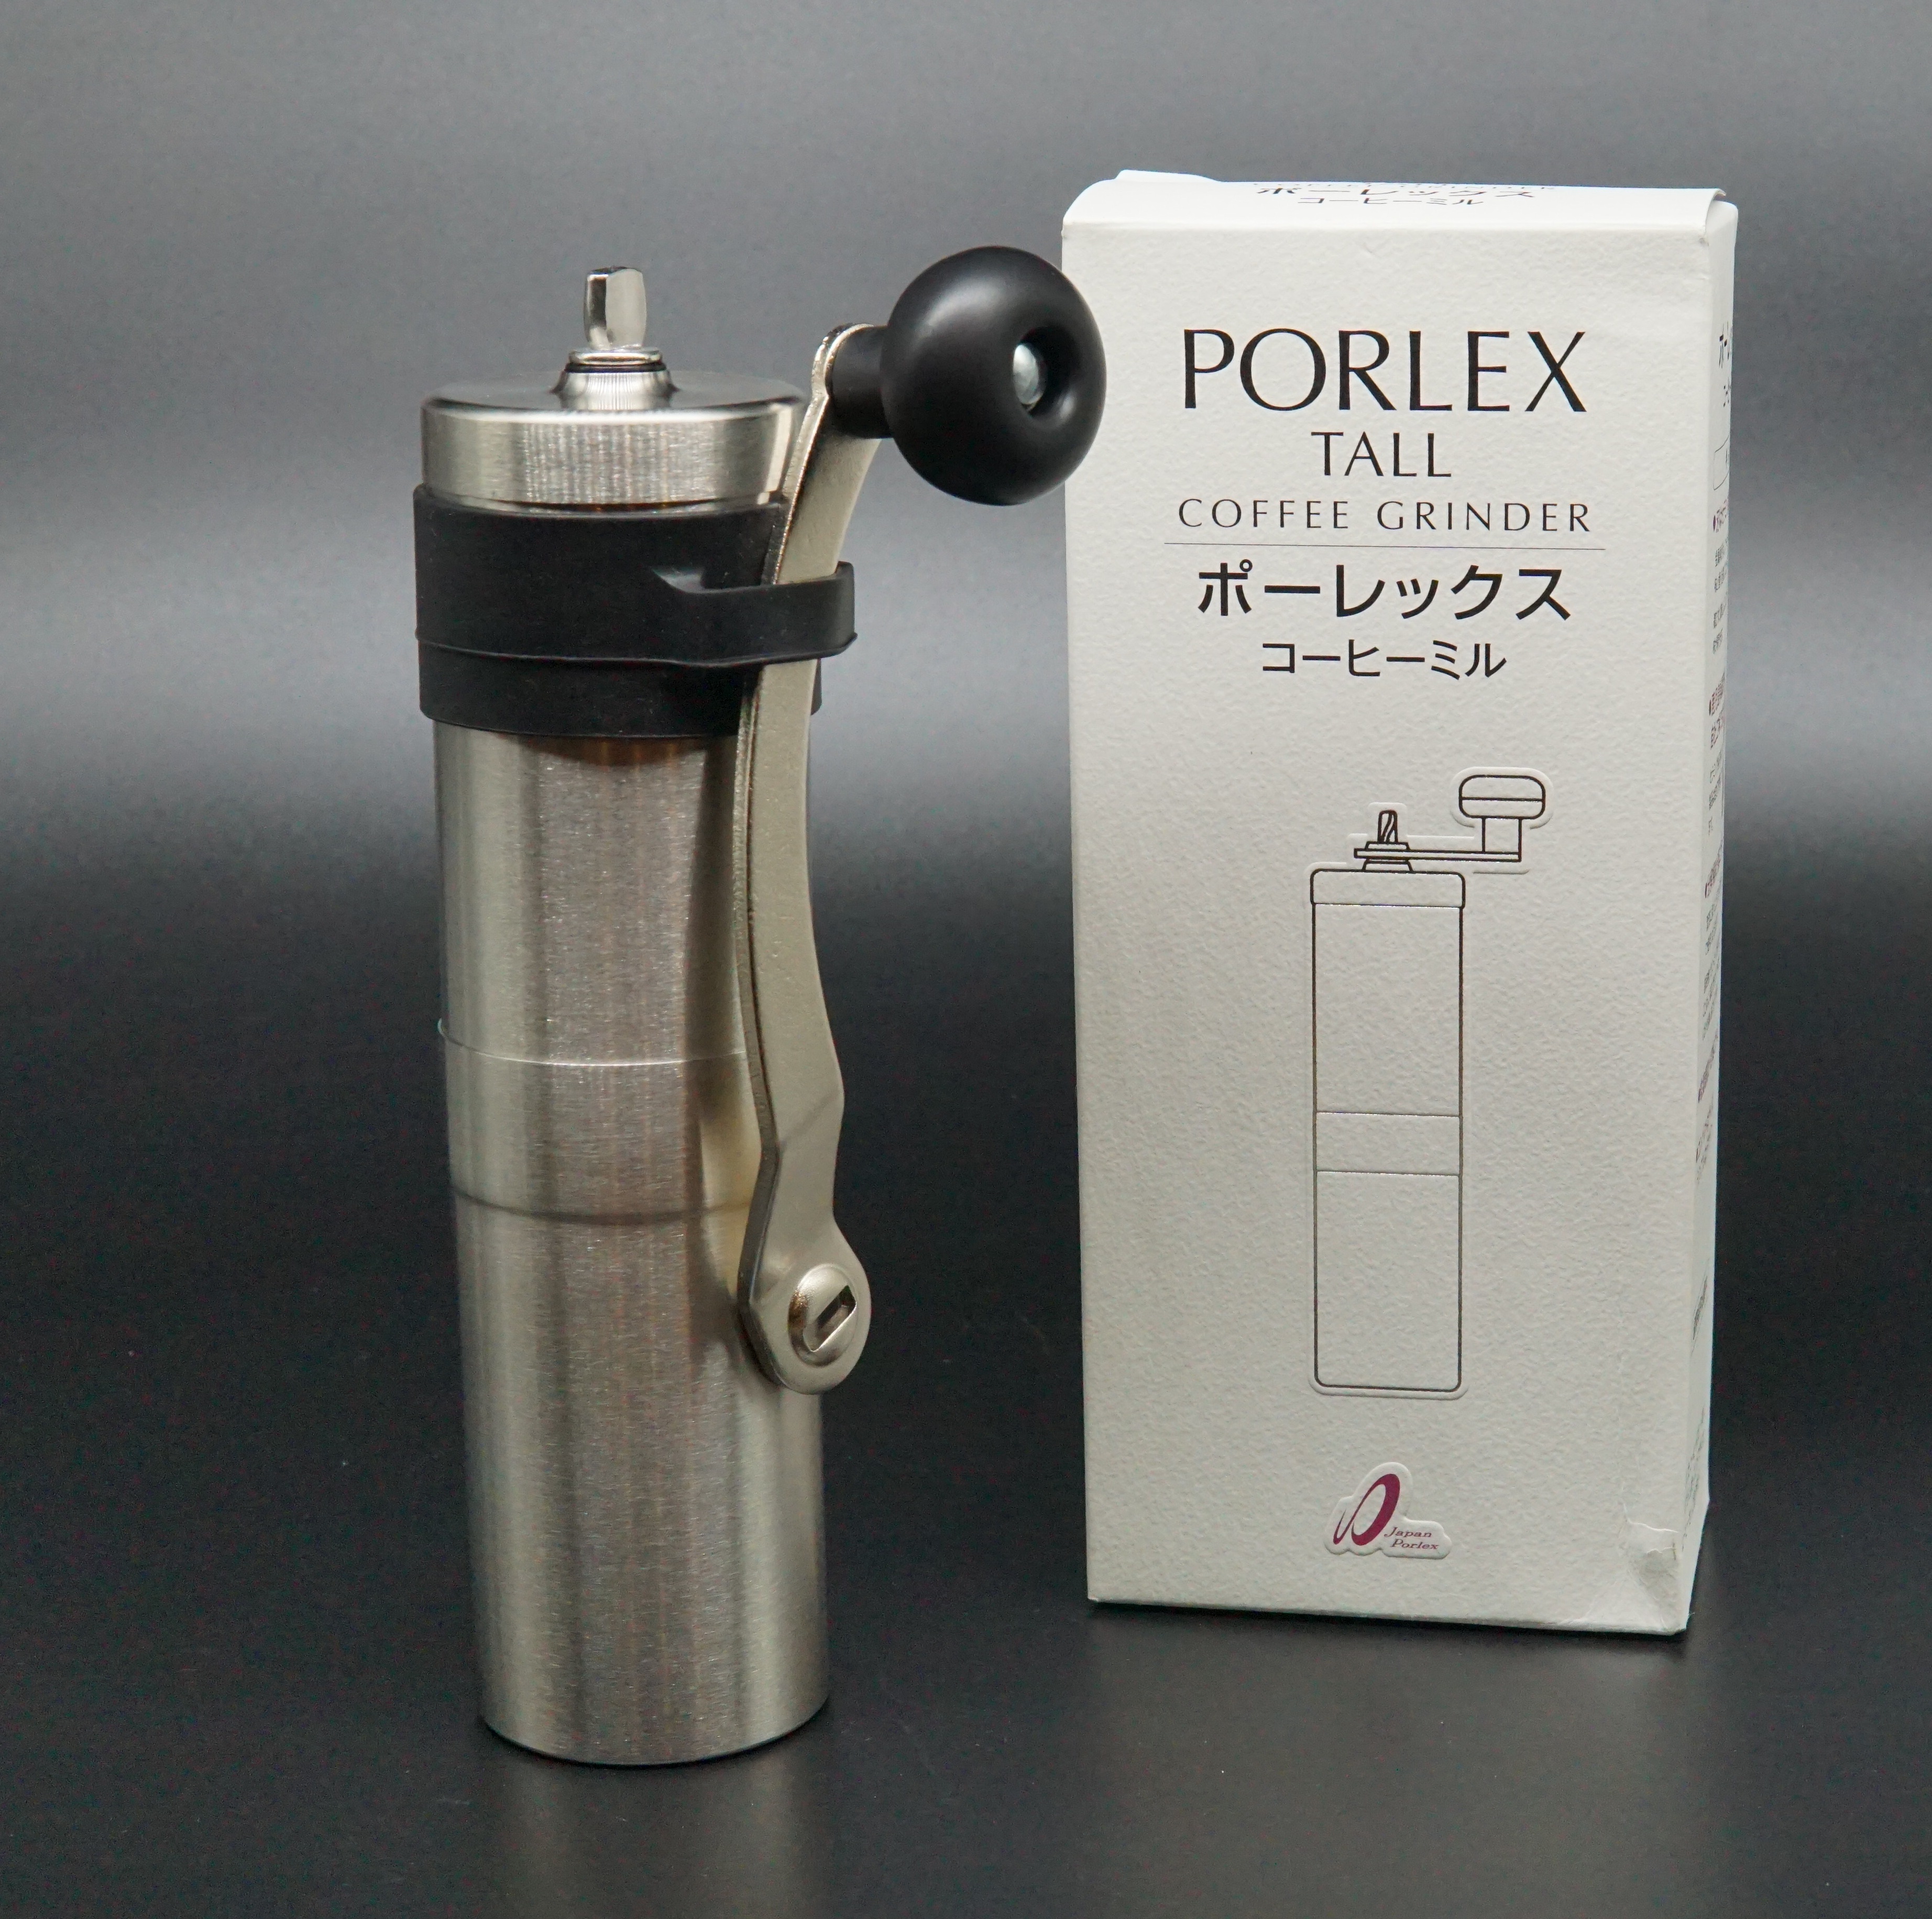 Cối xay Porlex nhỏ gọn -mạnh mẽ cho tay chơi cà phê thứ thiệt.